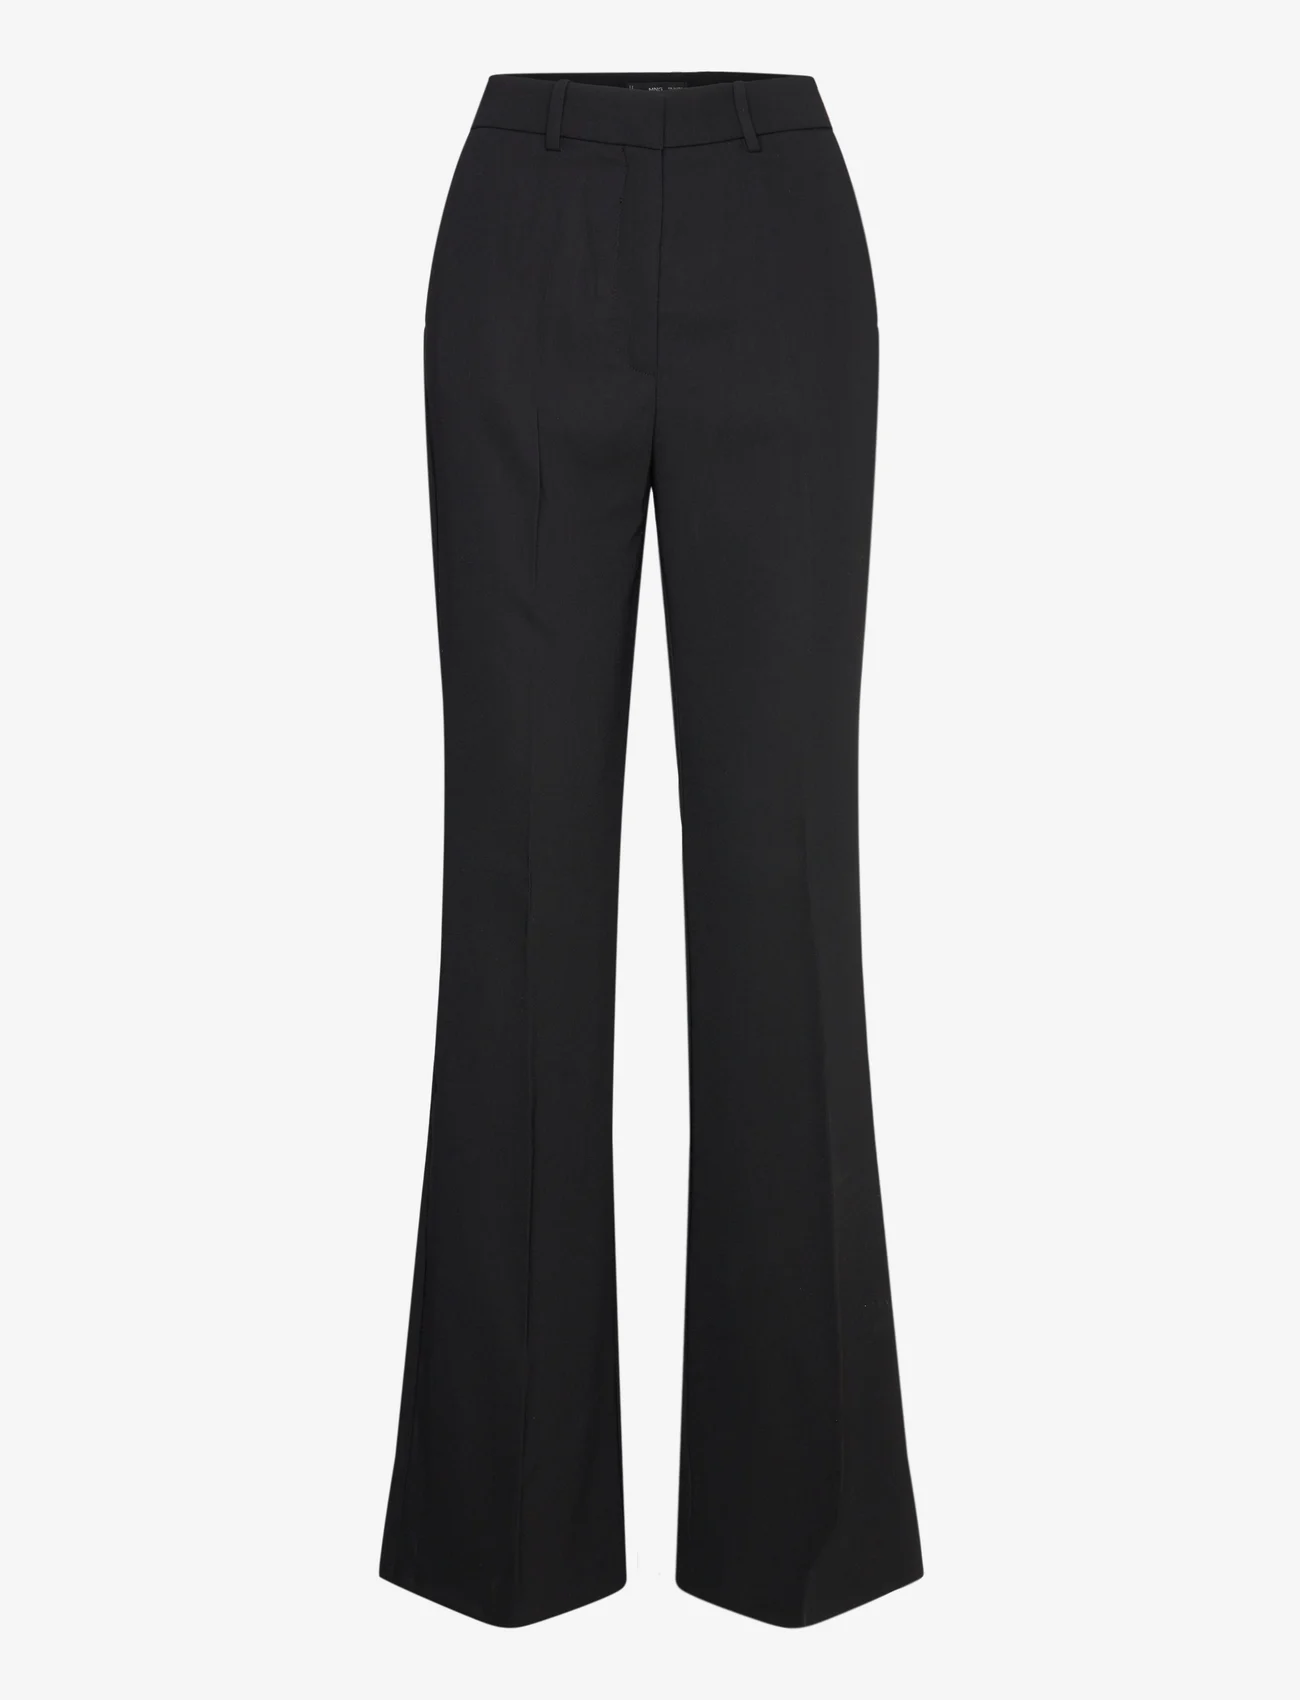 Mango - Flared trouser suit - kostymbyxor - black - 0